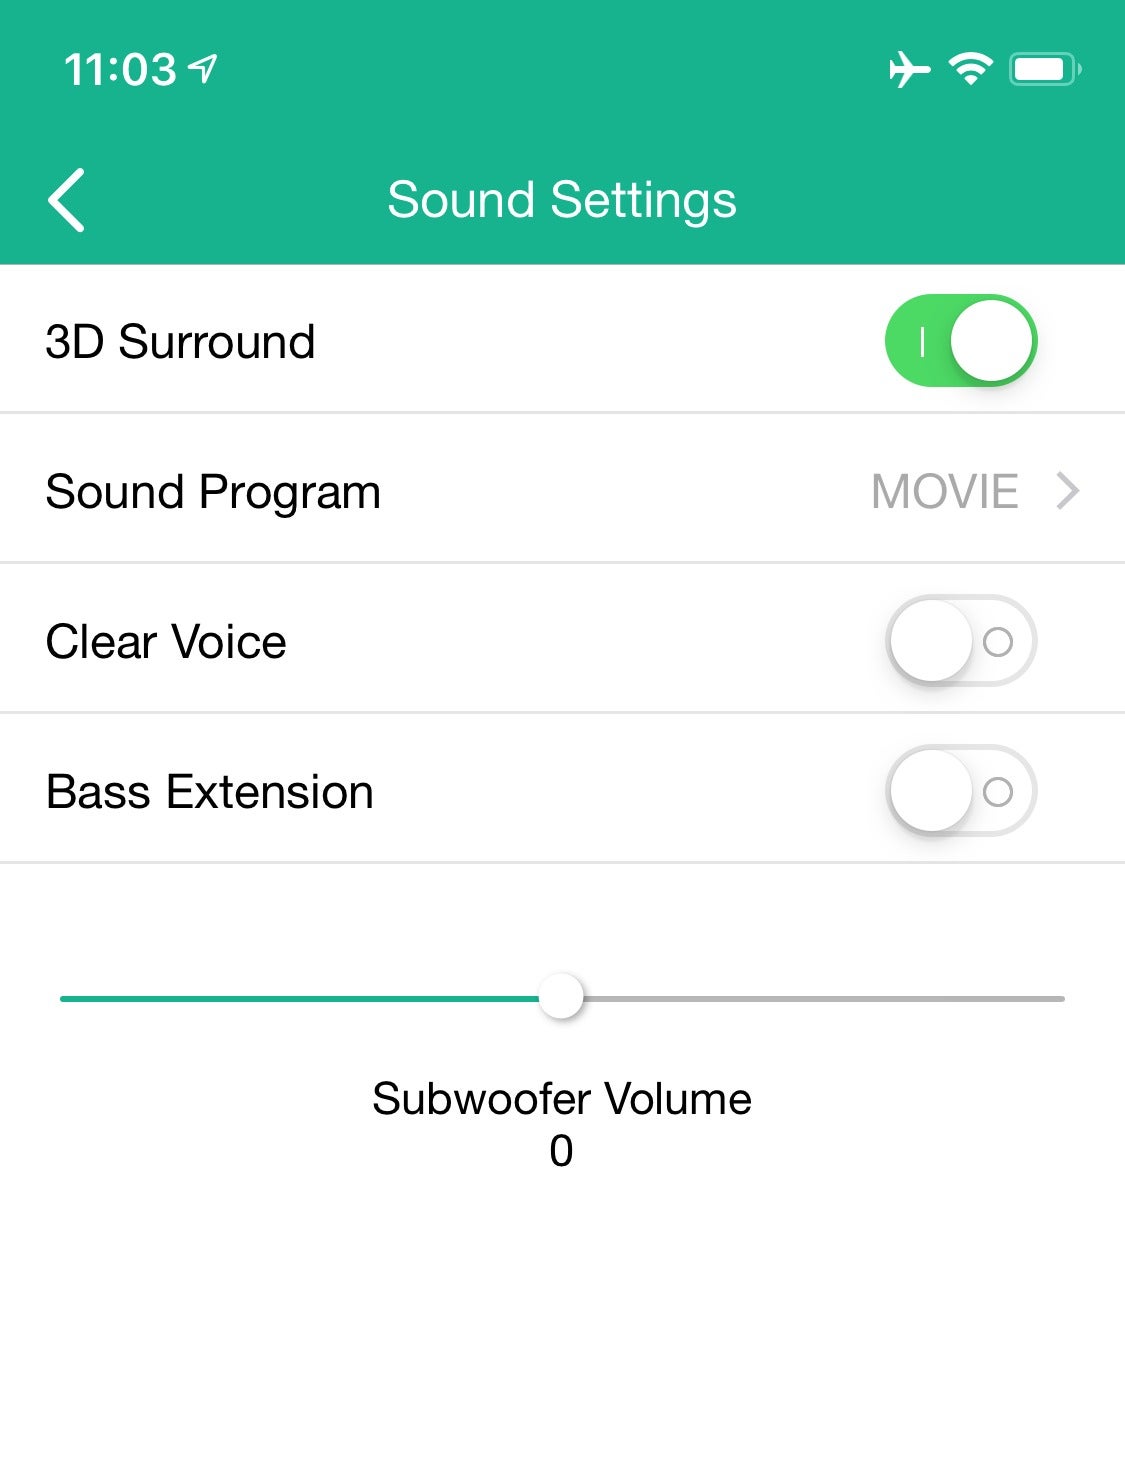 Yamaha YAS-209 soundbar with Alexa review: DTS Virtual:X 3D surround